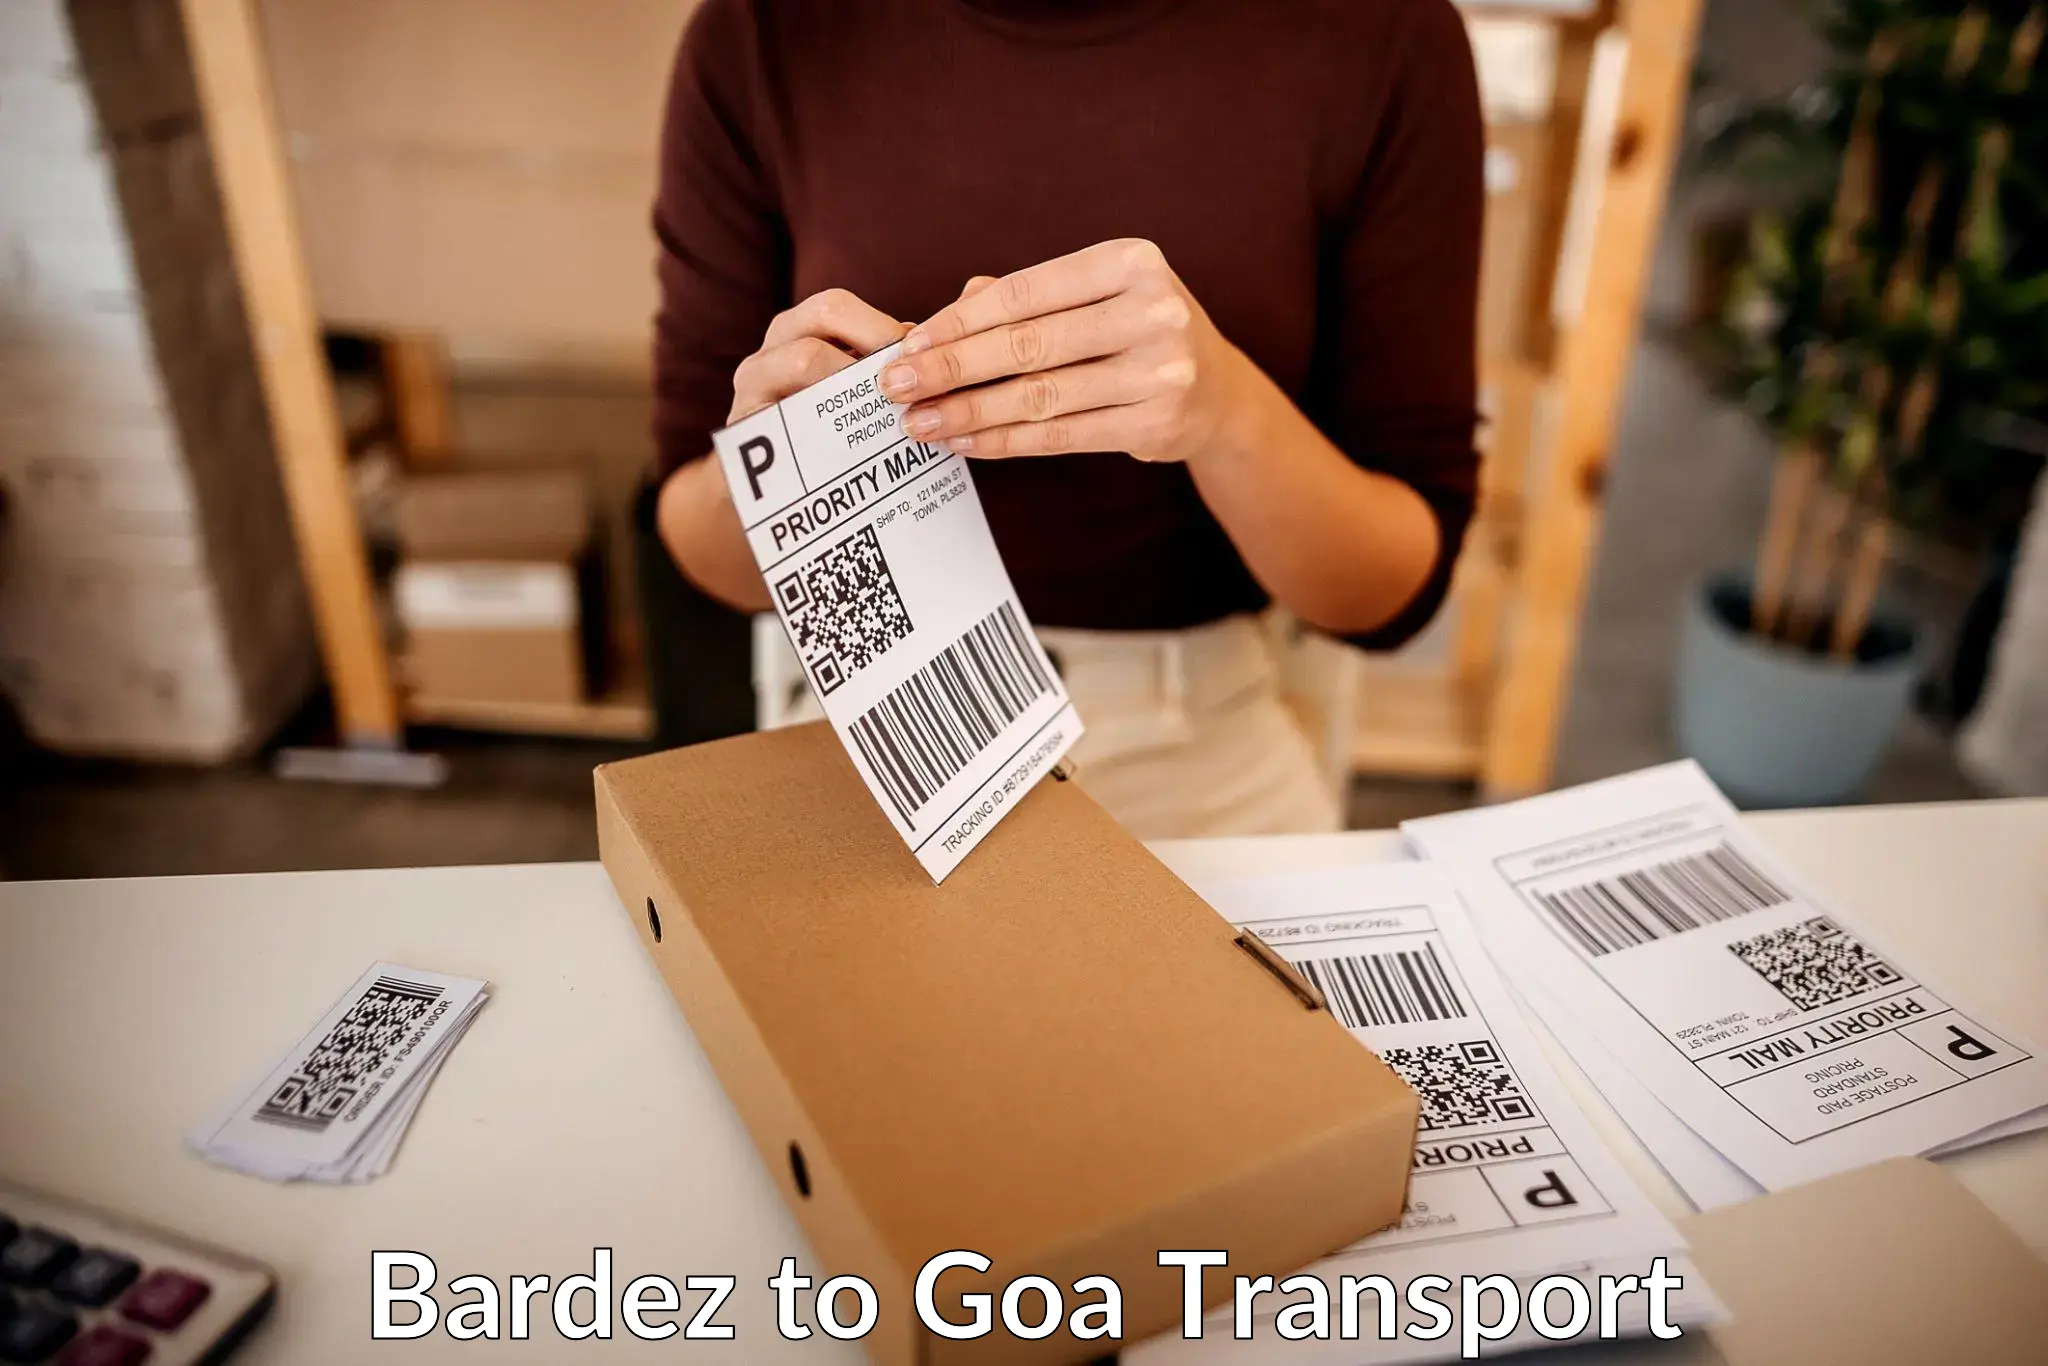 Transport shared services Bardez to Goa University